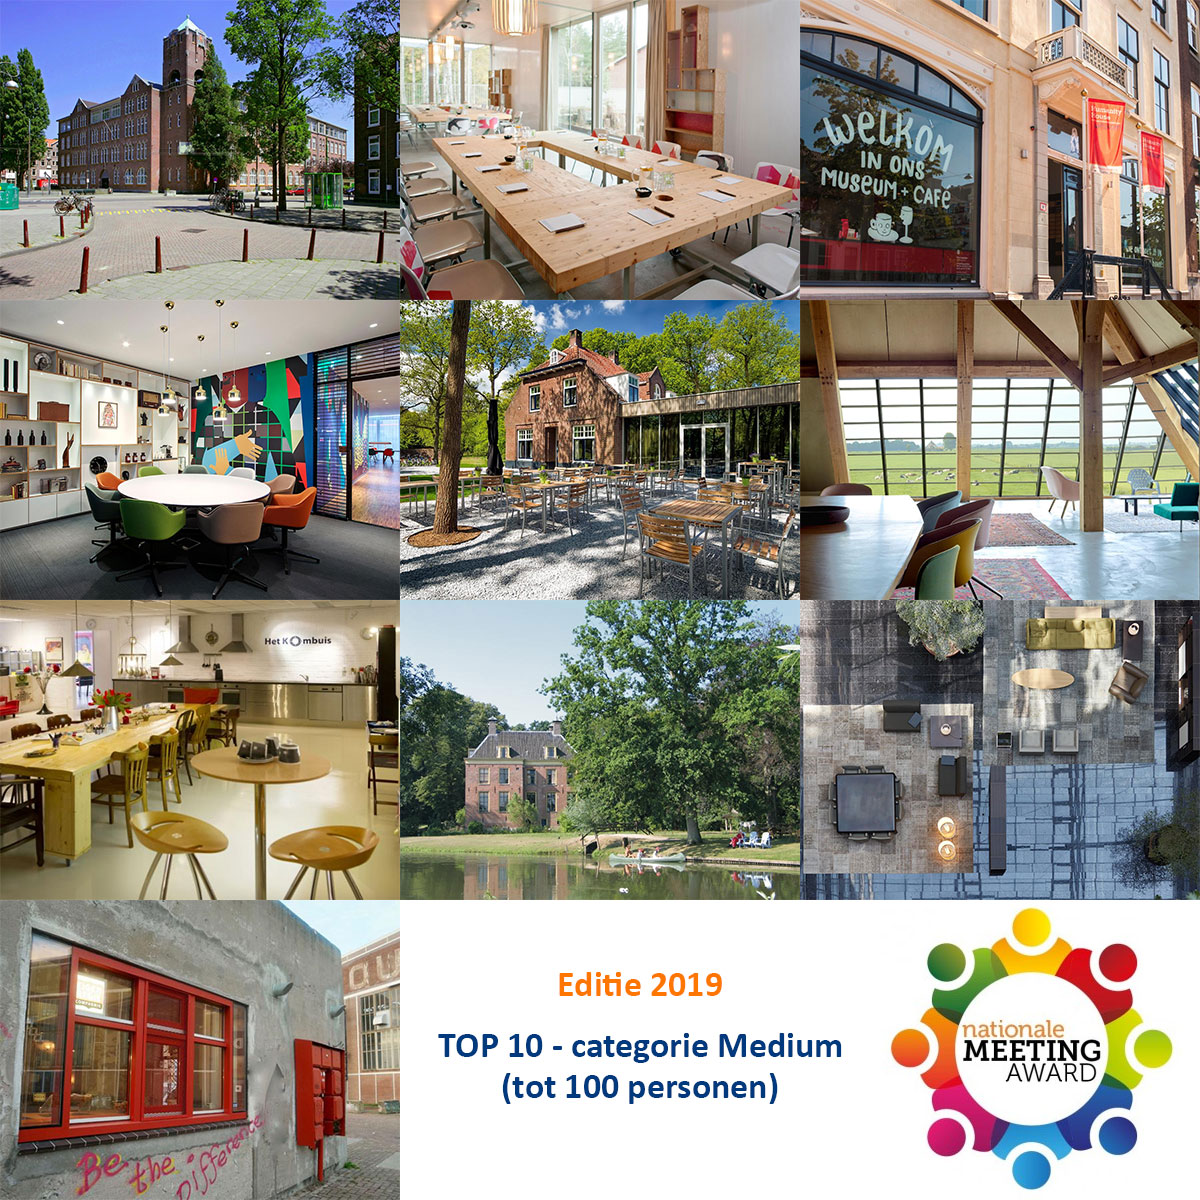 Beste 10 vergaderlocaties tot 100 personen in Nederland 2019